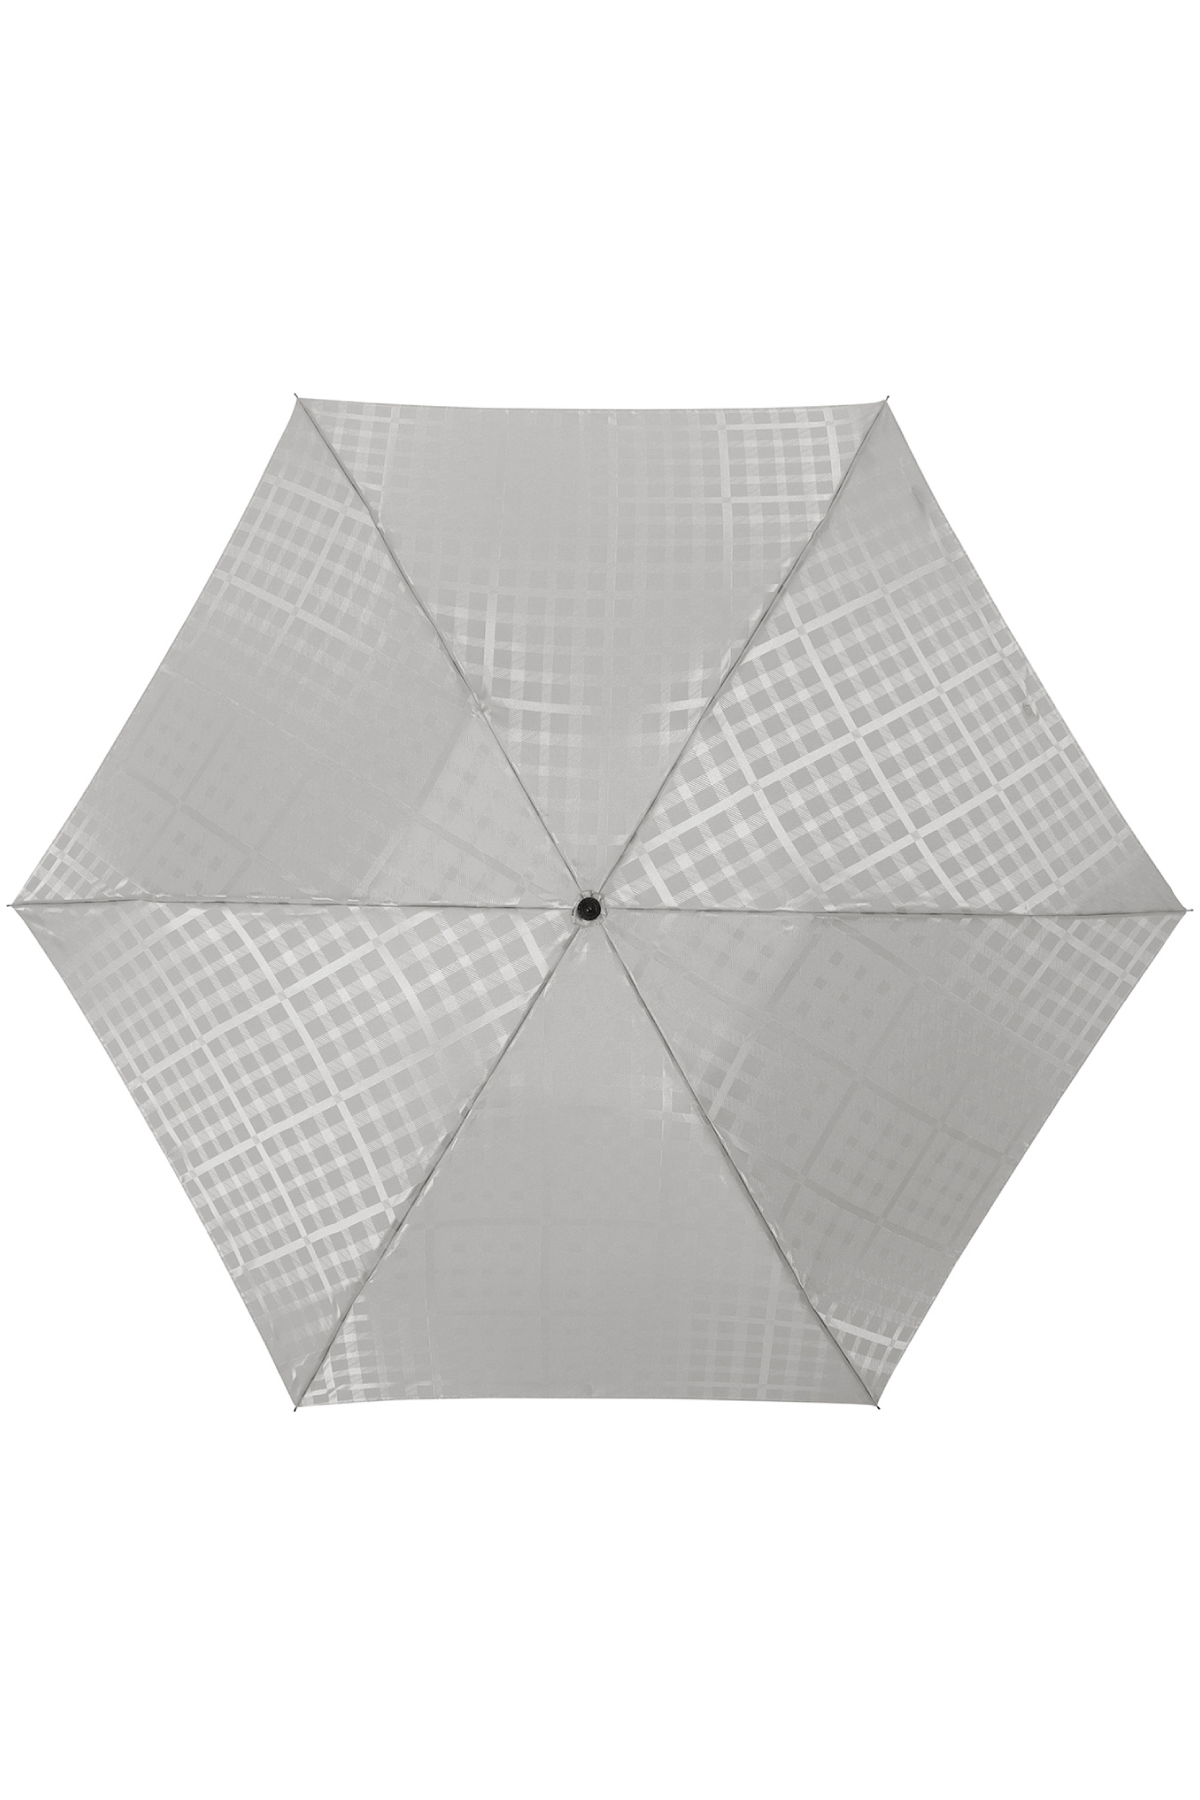 【雨傘】ミニ折りたたみ傘ジャカード 詳細画像 5